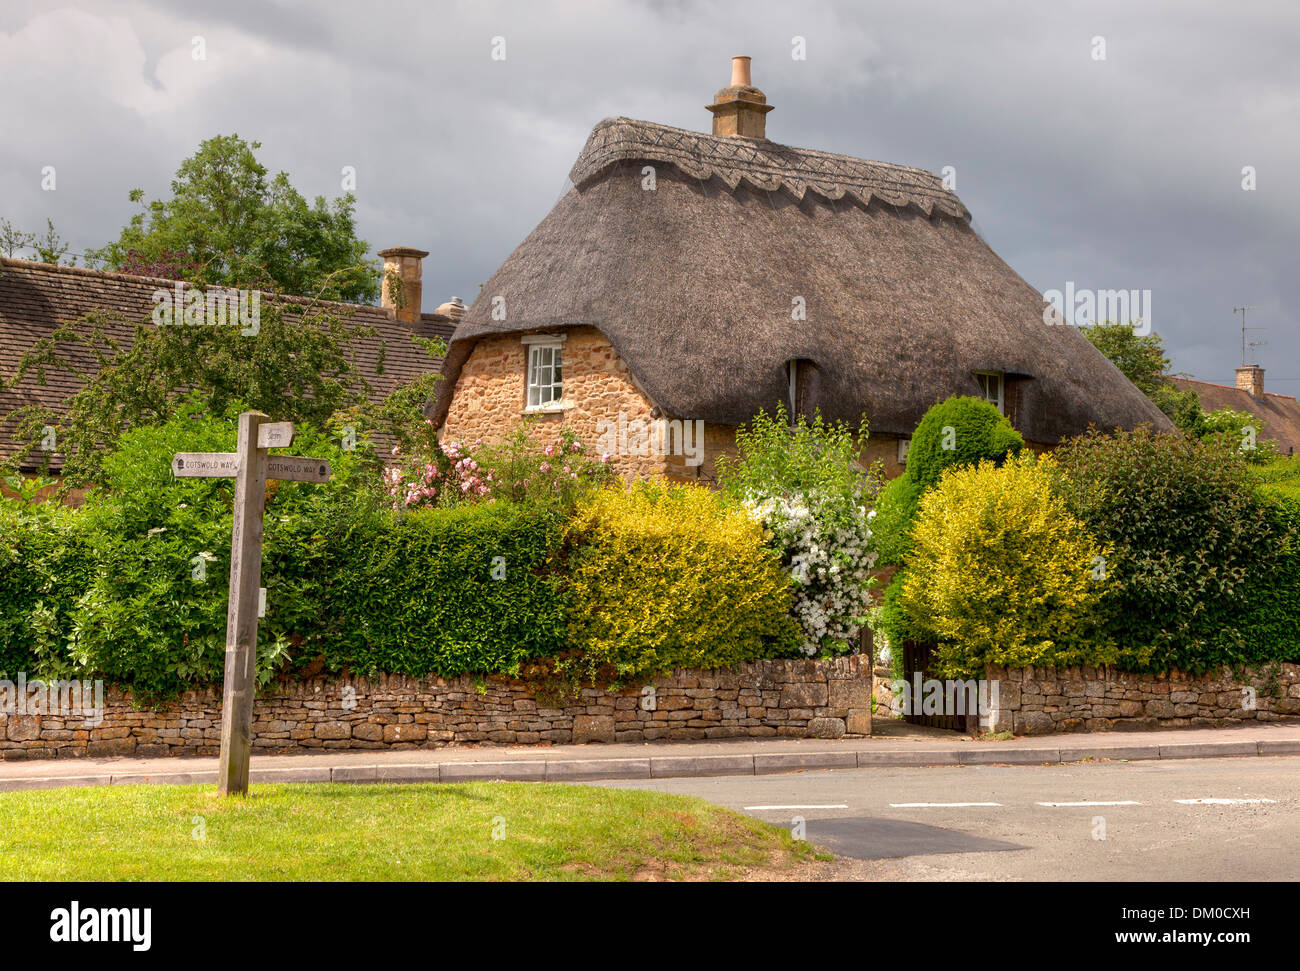 Jolie maison en pierre au toit de chaume, Cotswolds, Chipping Campden, Gloucestershire, Angleterre. Banque D'Images